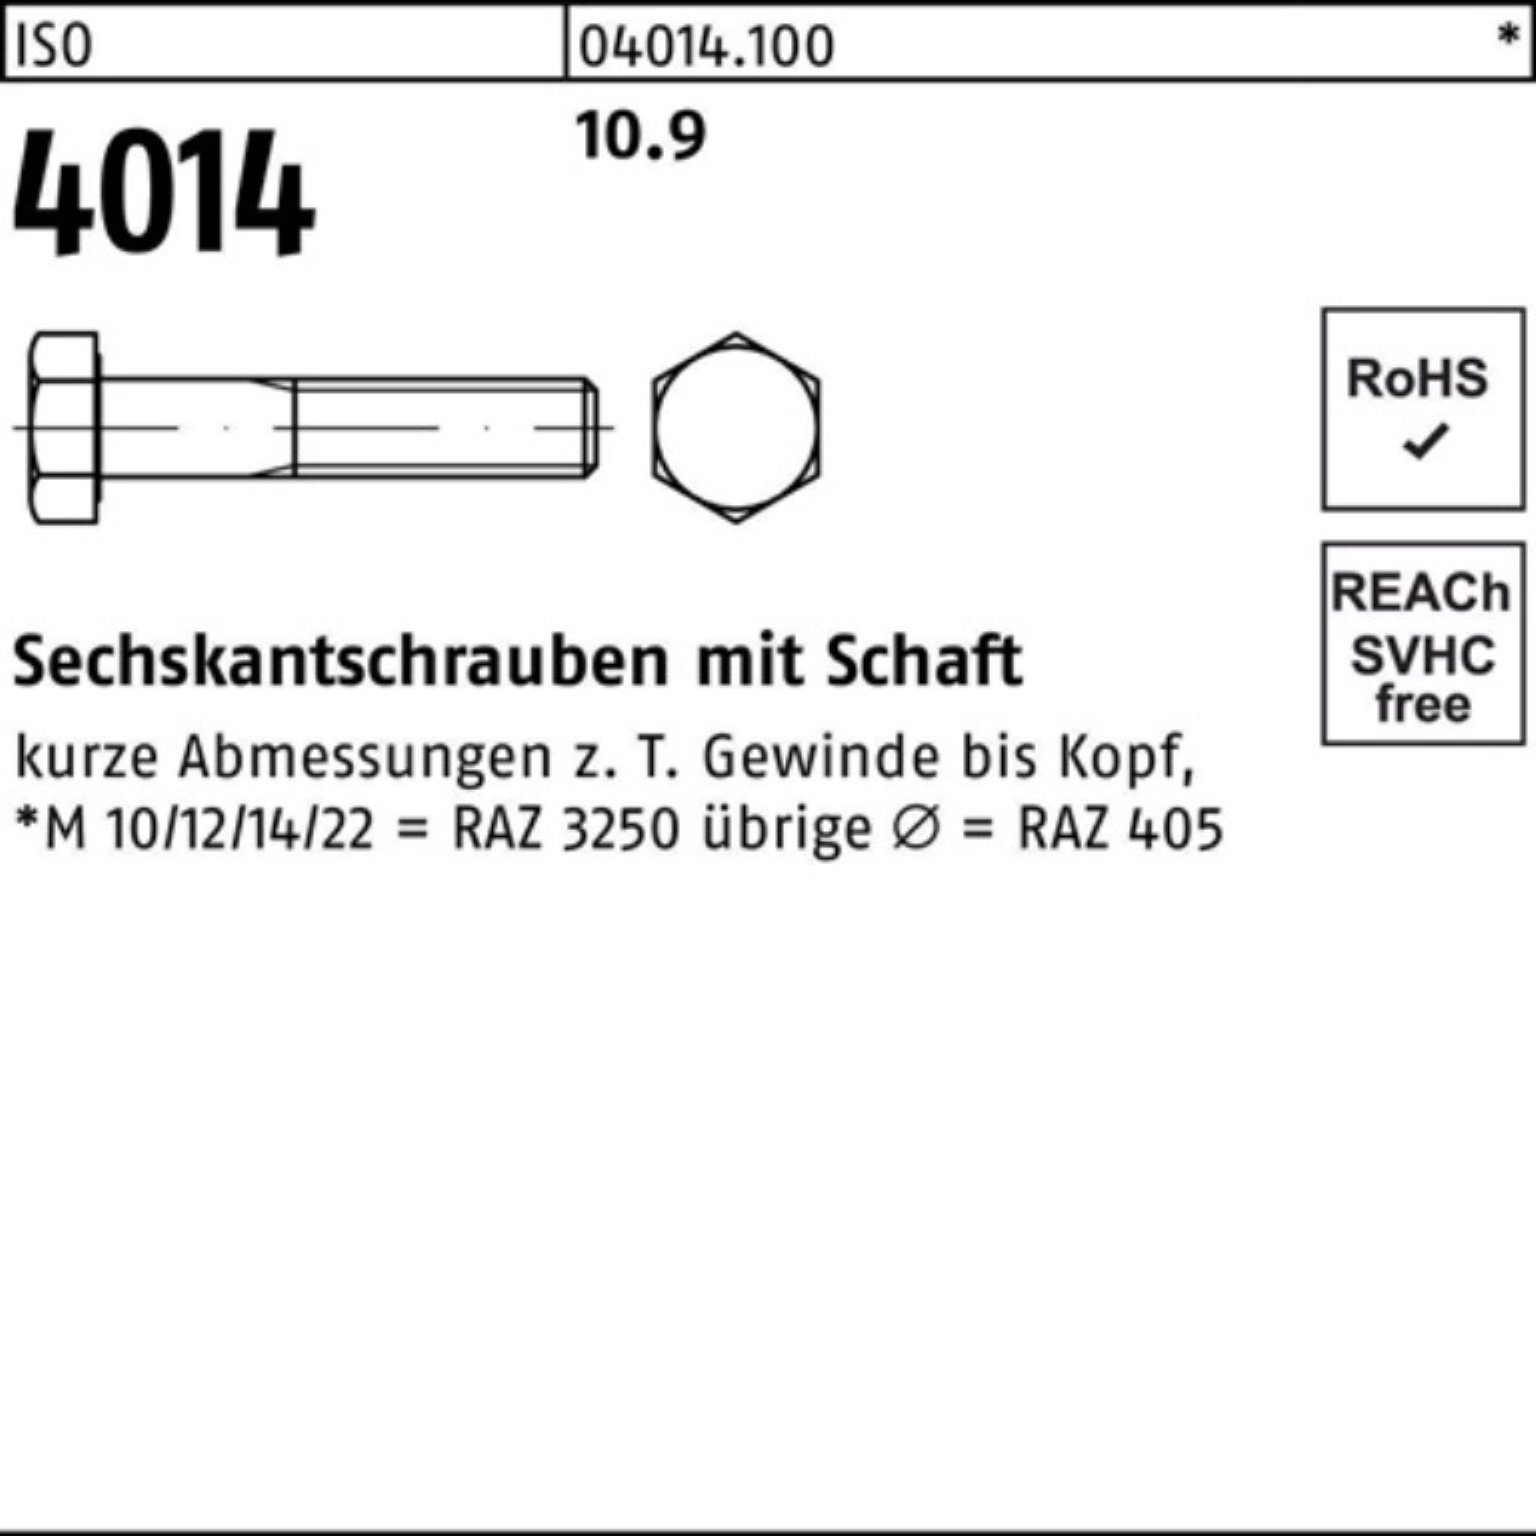 Bufab Sechskantschraube 100er Pack Sechskantschraube 4014 IS Stück Schaft 1 10.9 260 M33x ISO